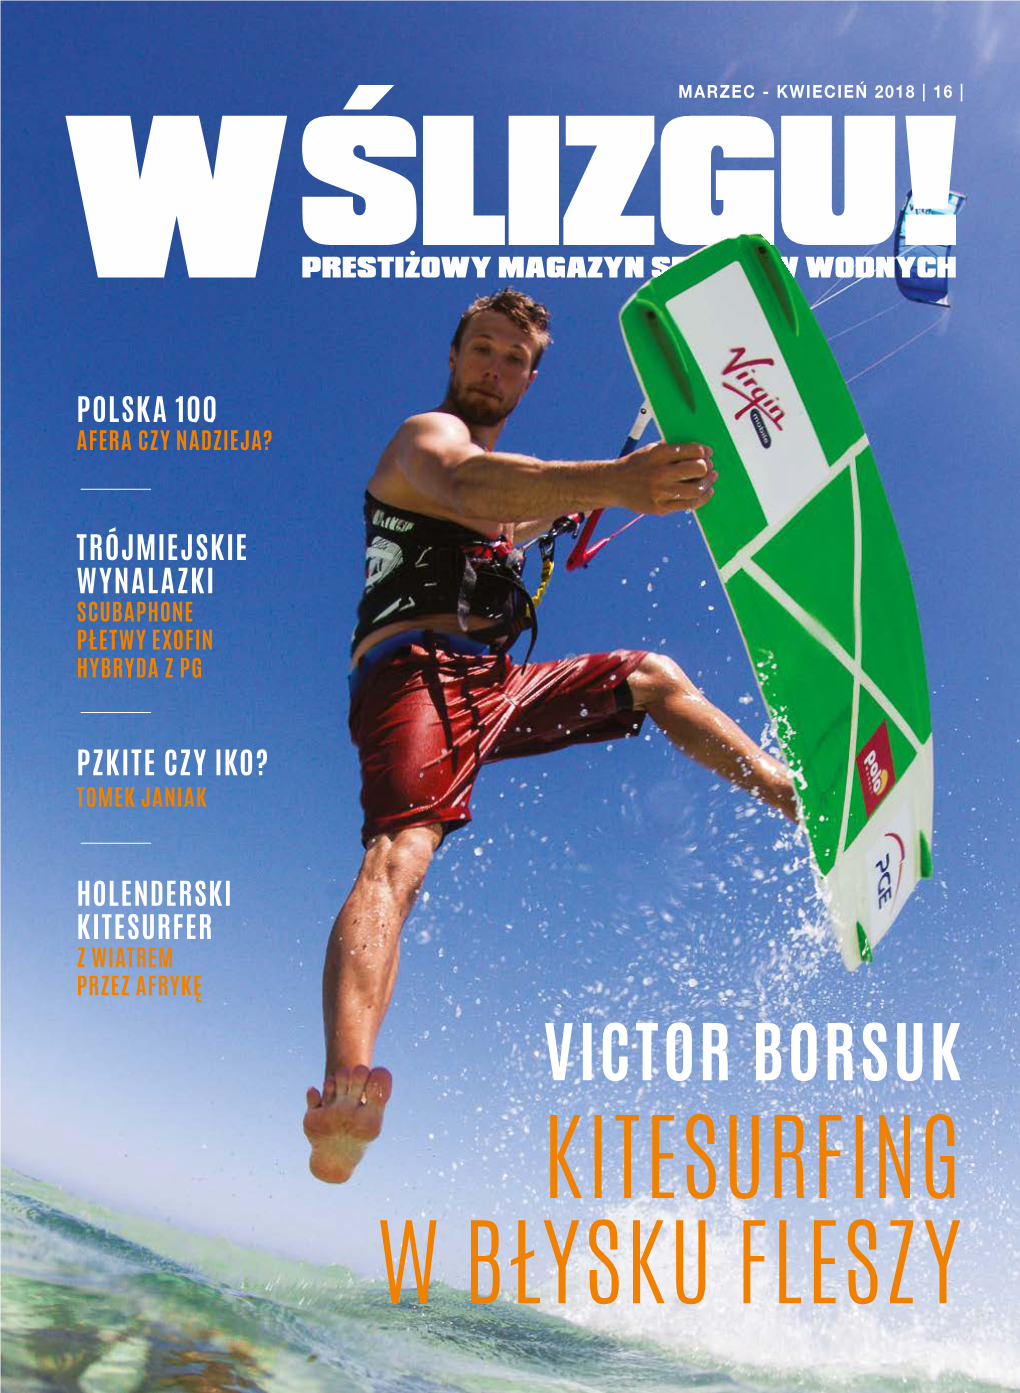 Kitesurfing W Błysku Fleszy